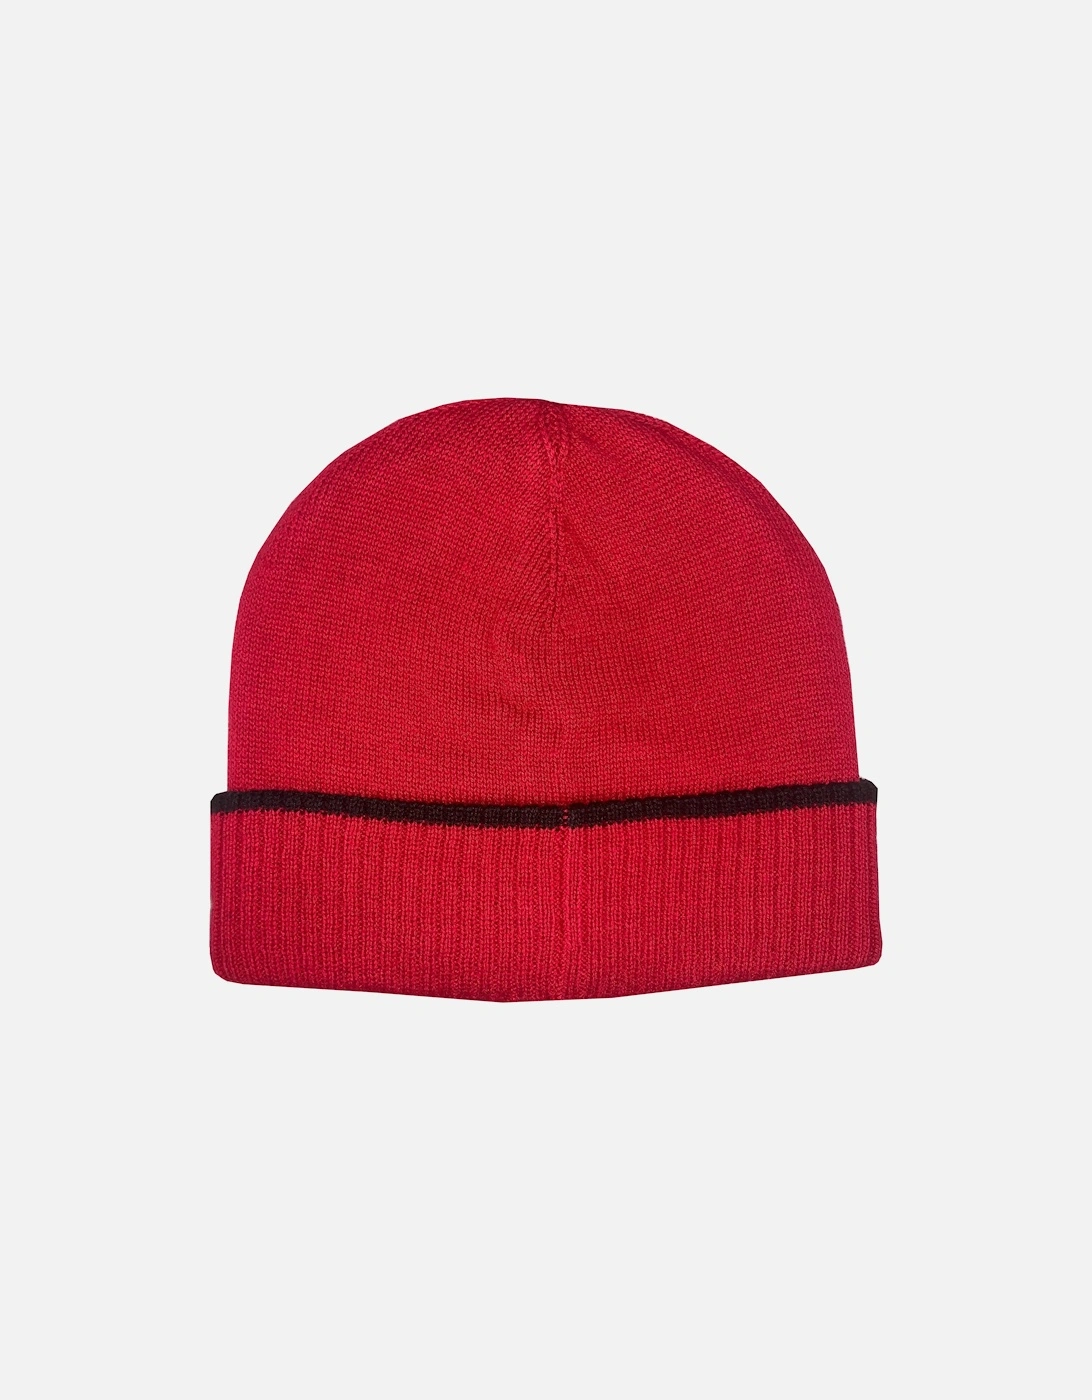 Infant Boy's Red Hat